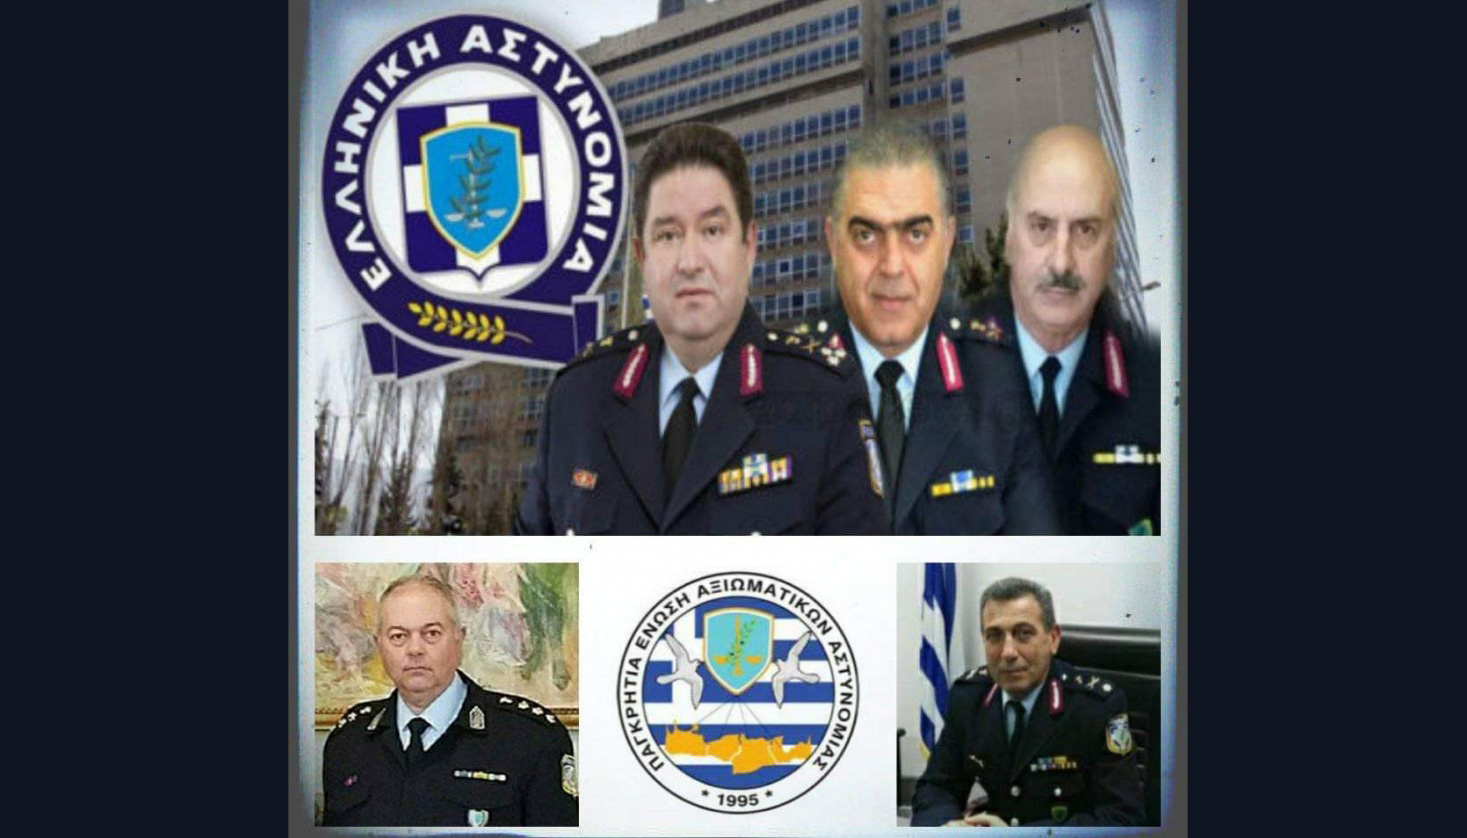 Ευχές από την Ένωση Αξιωματικών Κρήτης στη νέα φυσική ηγεσία της ΕΛ.ΑΣ.